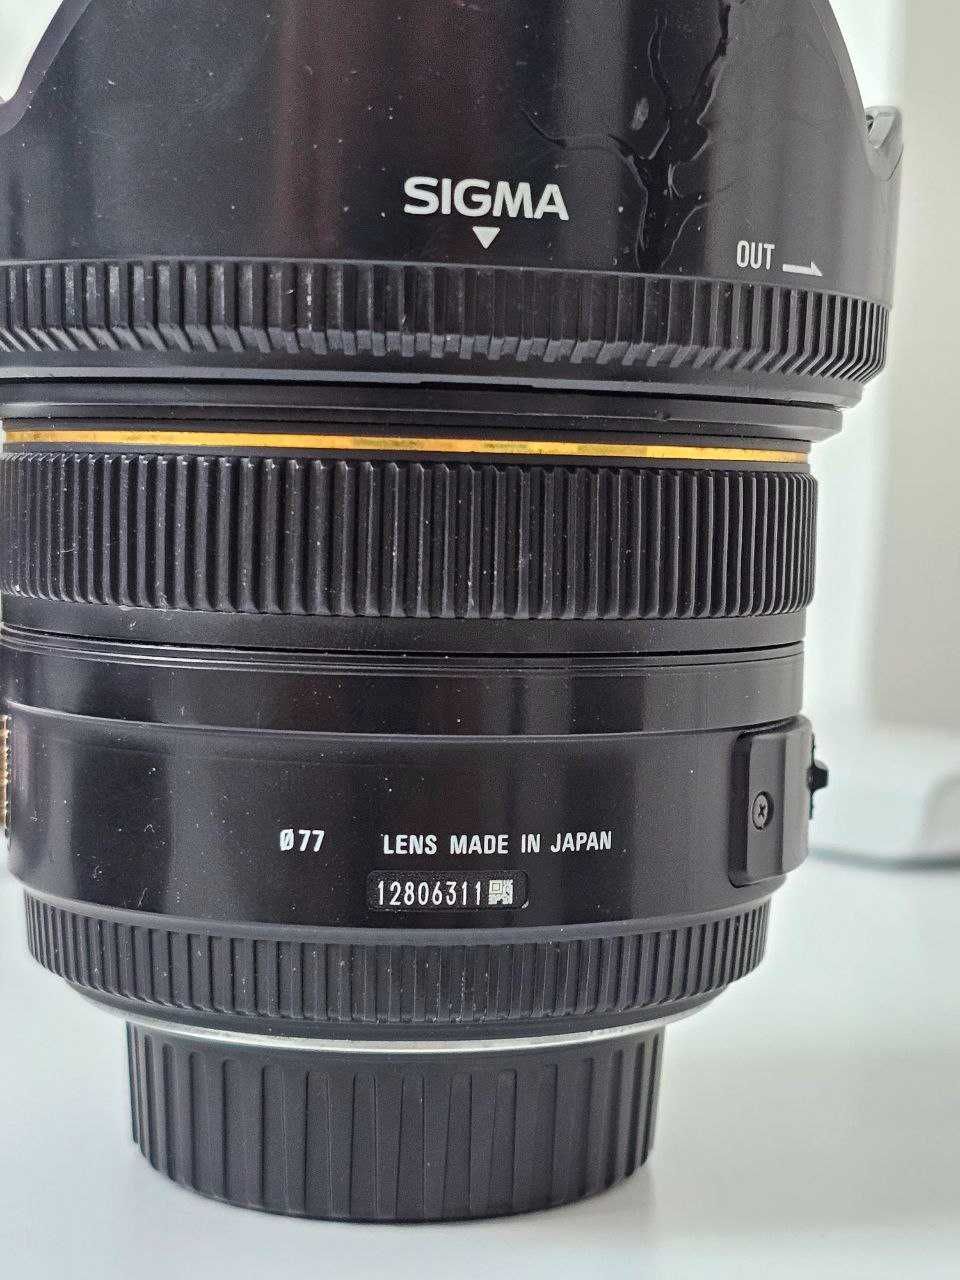 об'єктив Sigma AF 50mm f/1.4 EX DG HSM для Nikon - автофокус